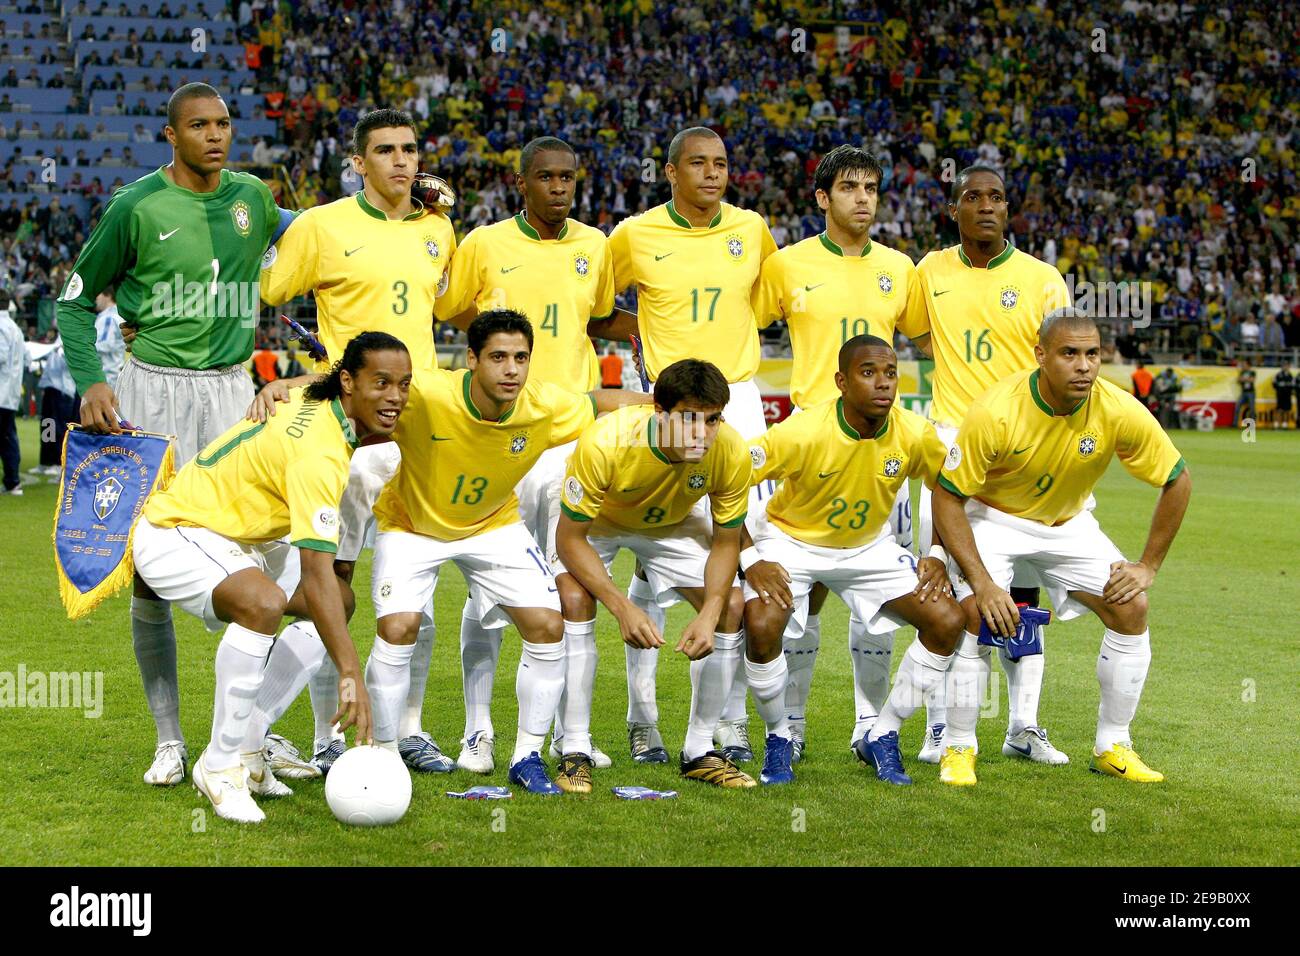 Équipe de football du Brésil pendant la coupe du monde 2006, Groupe F,  Japon contre Brésil au stade signal Iduna Park à Dortmund, Allemagne, le 22  juin 2006. Le Brésil a gagné